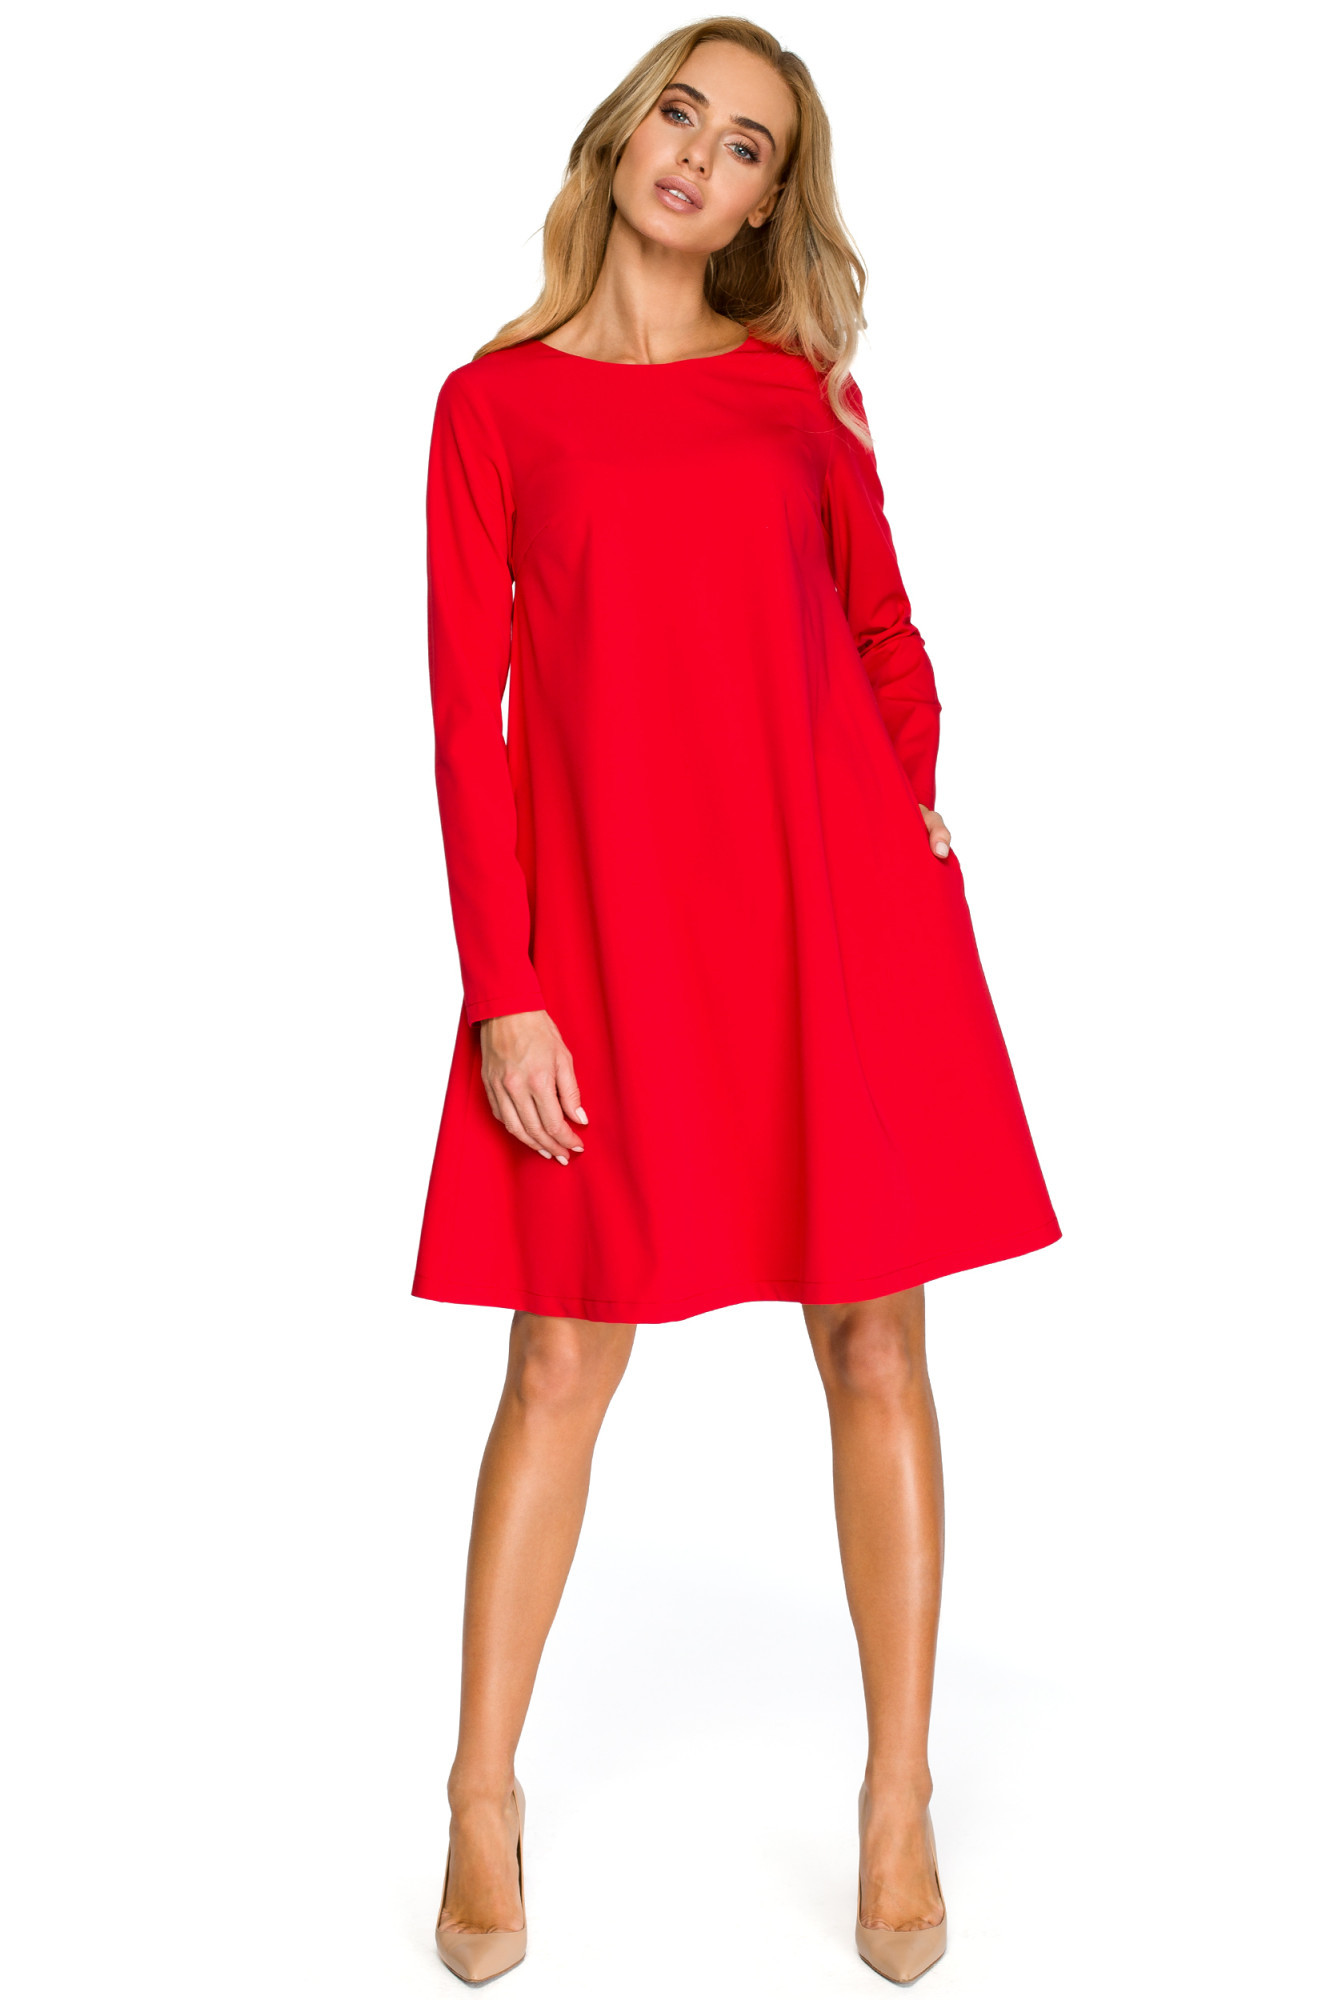 Dámské šaty S137 červené - Stylove XXL